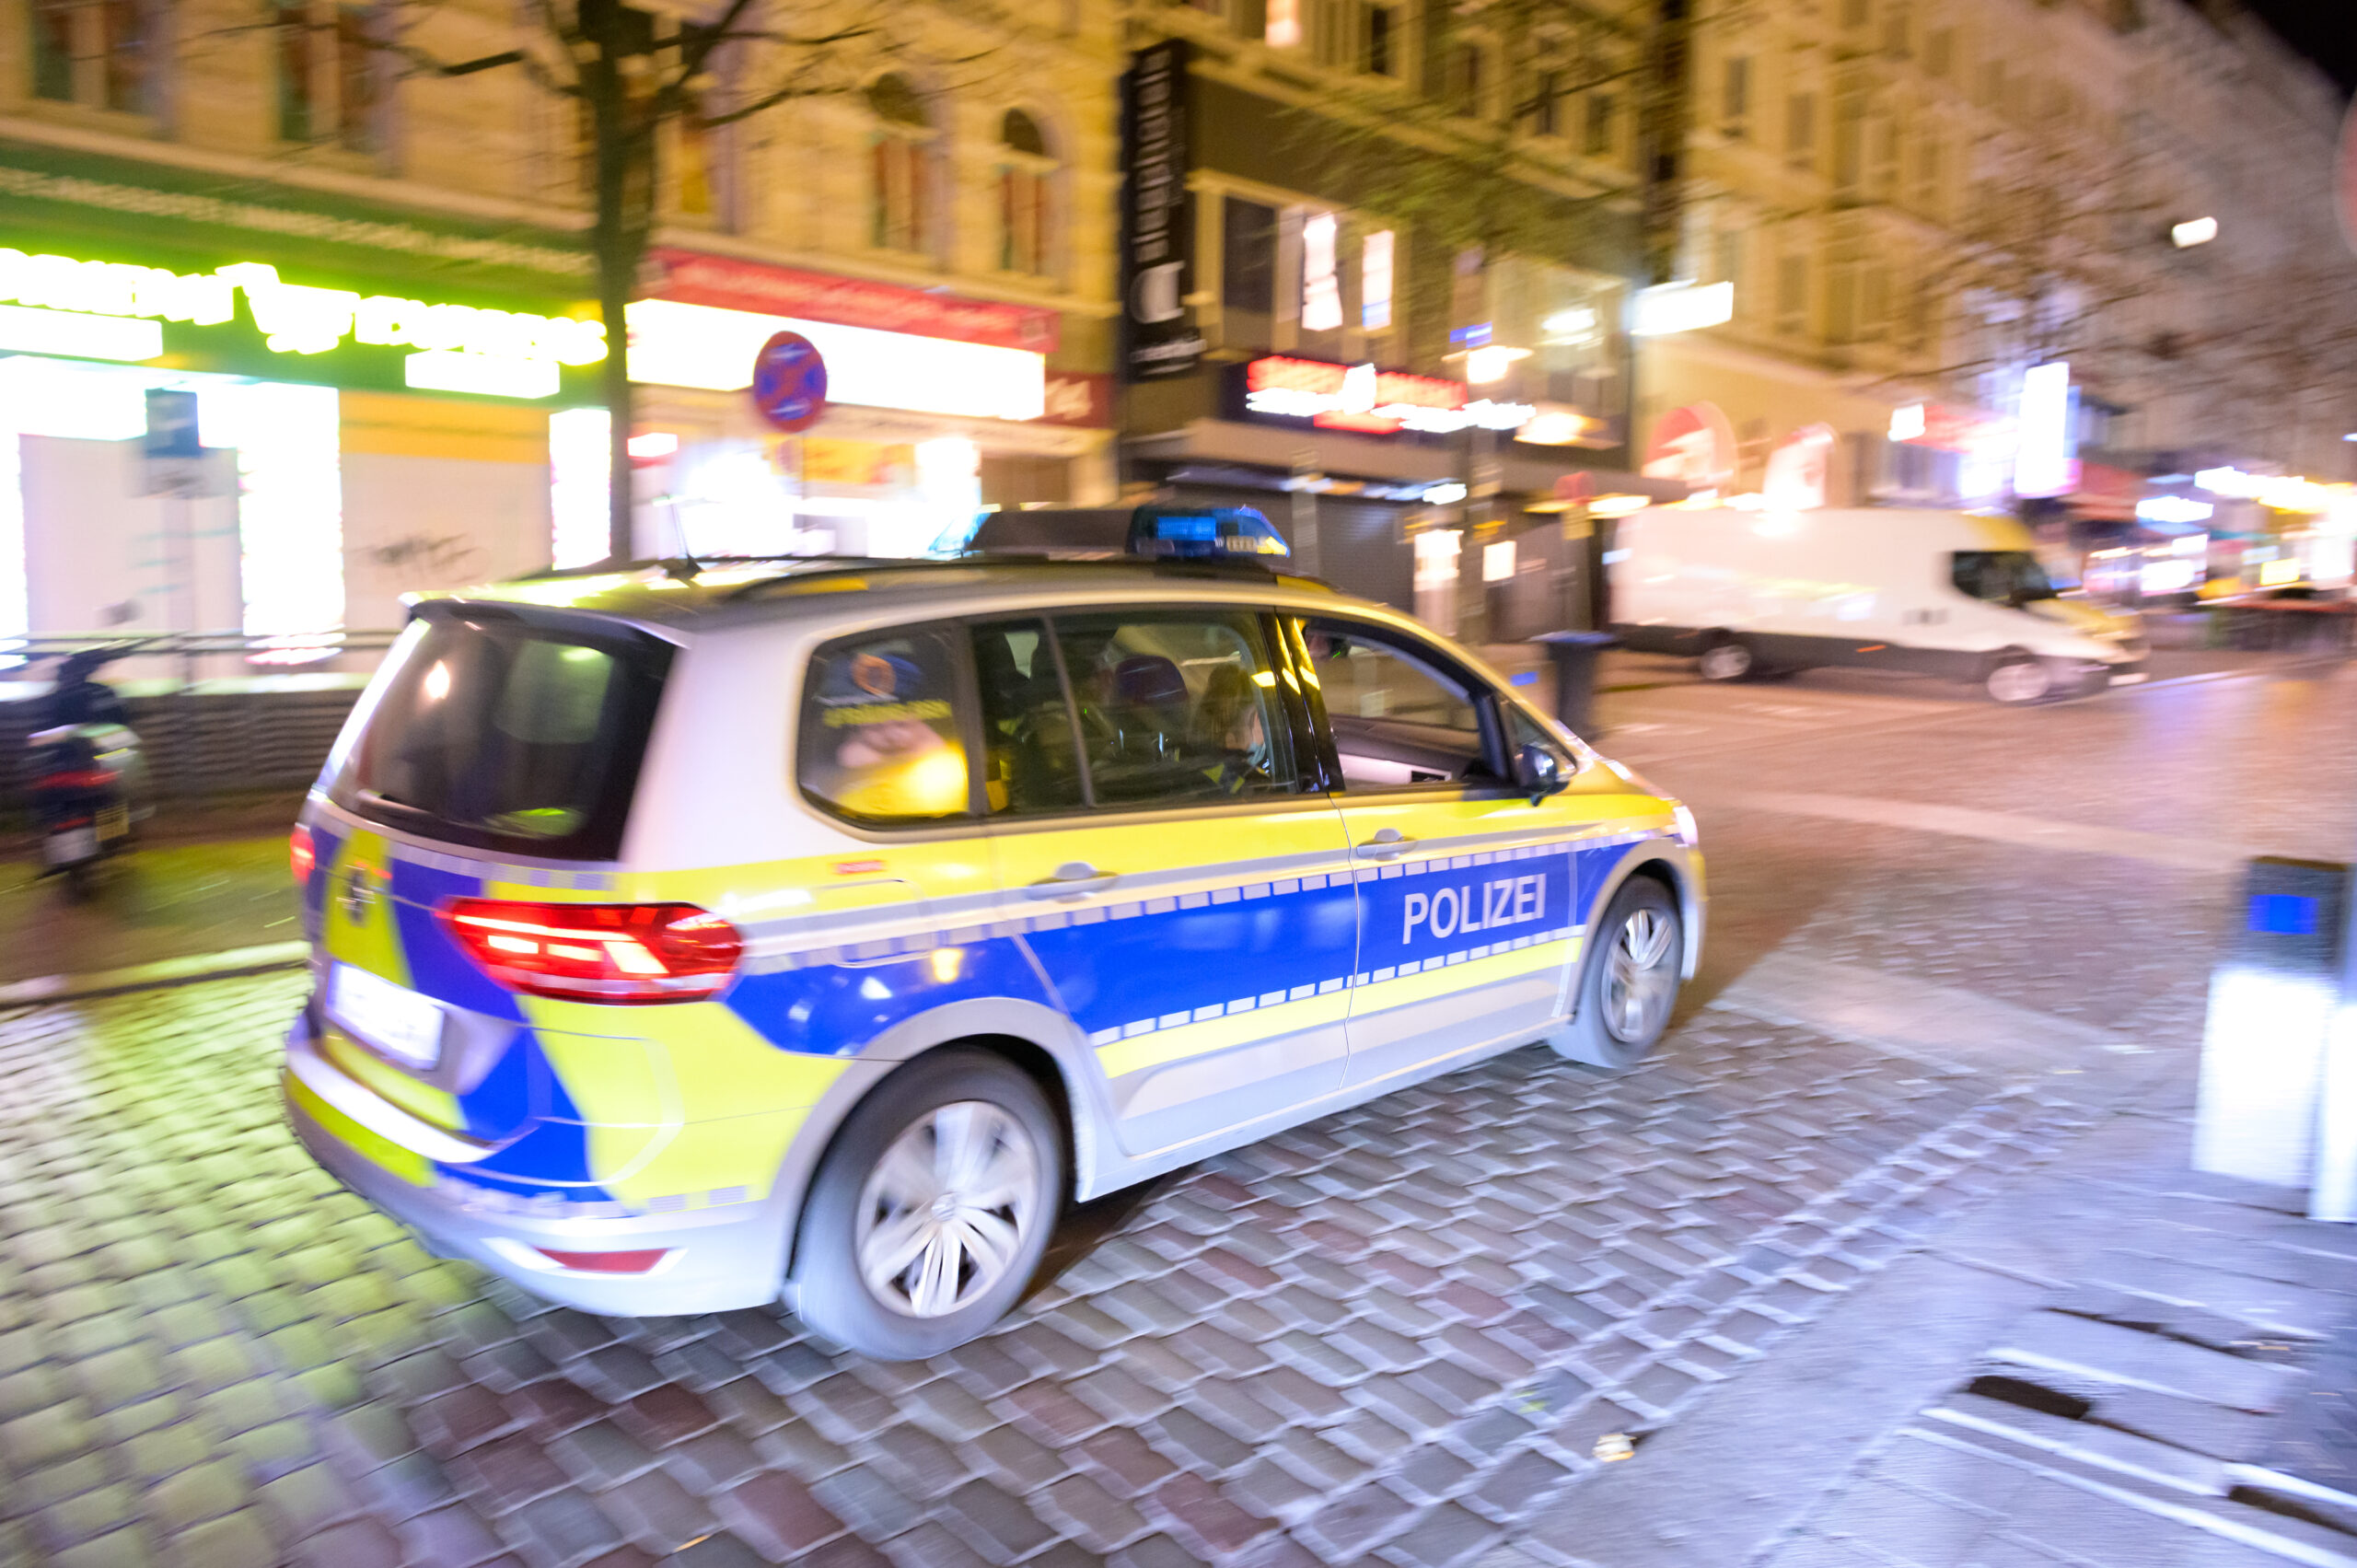 Frau an Bushaltestelle n Hamburg angefallen – Polizei fahndet nach Täter (Symbolbild)